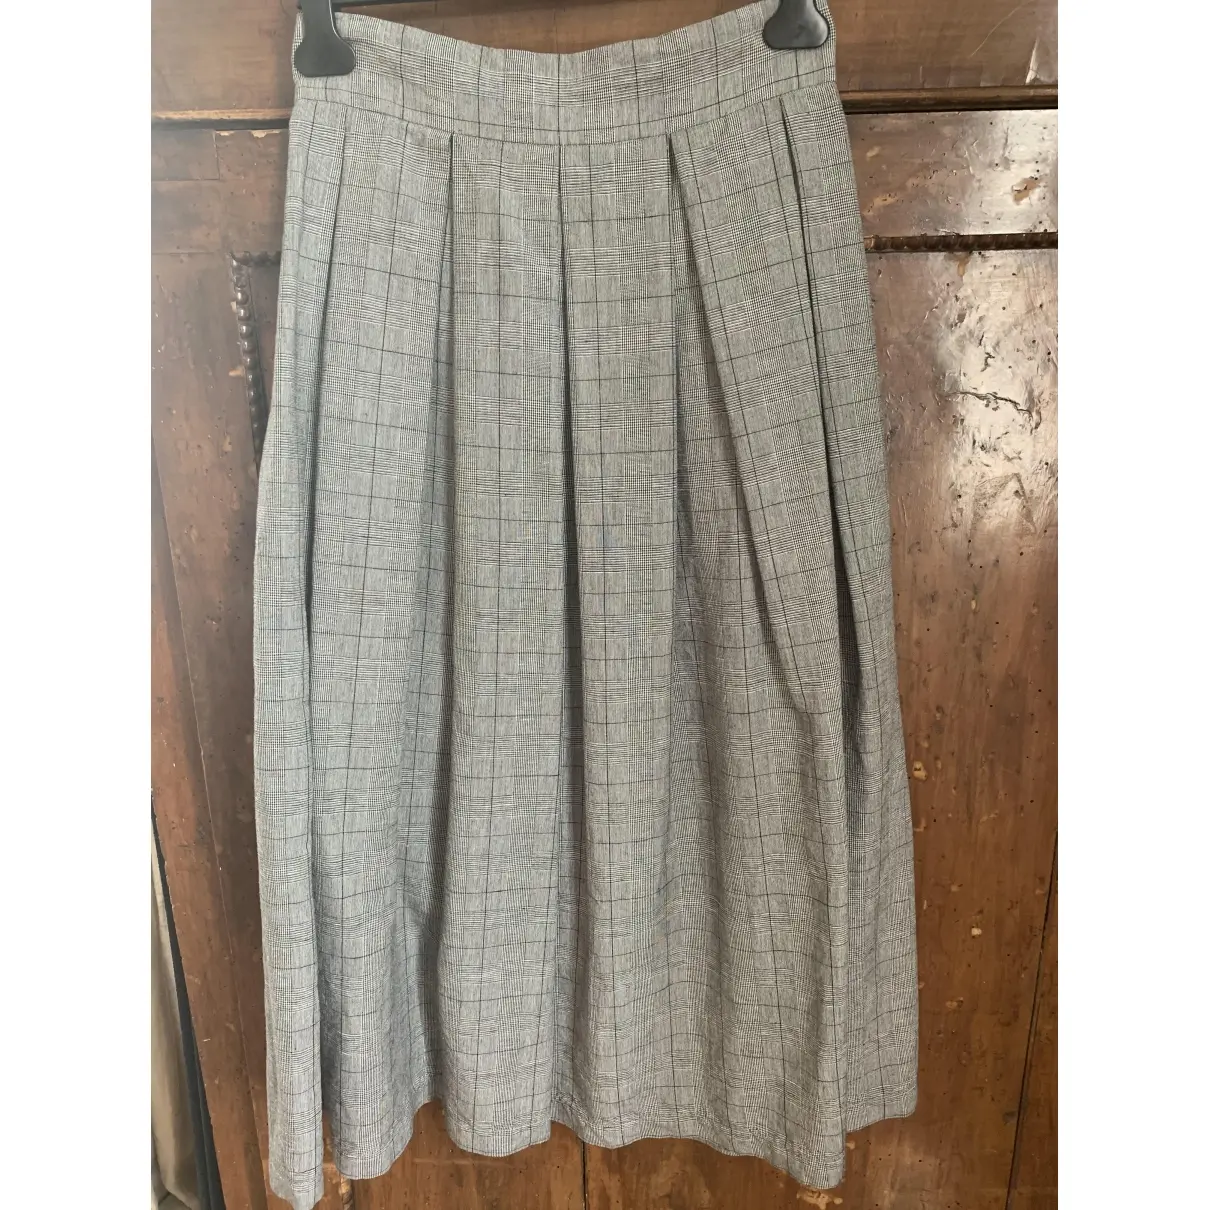 Buy Department 5 Maxi skirt online